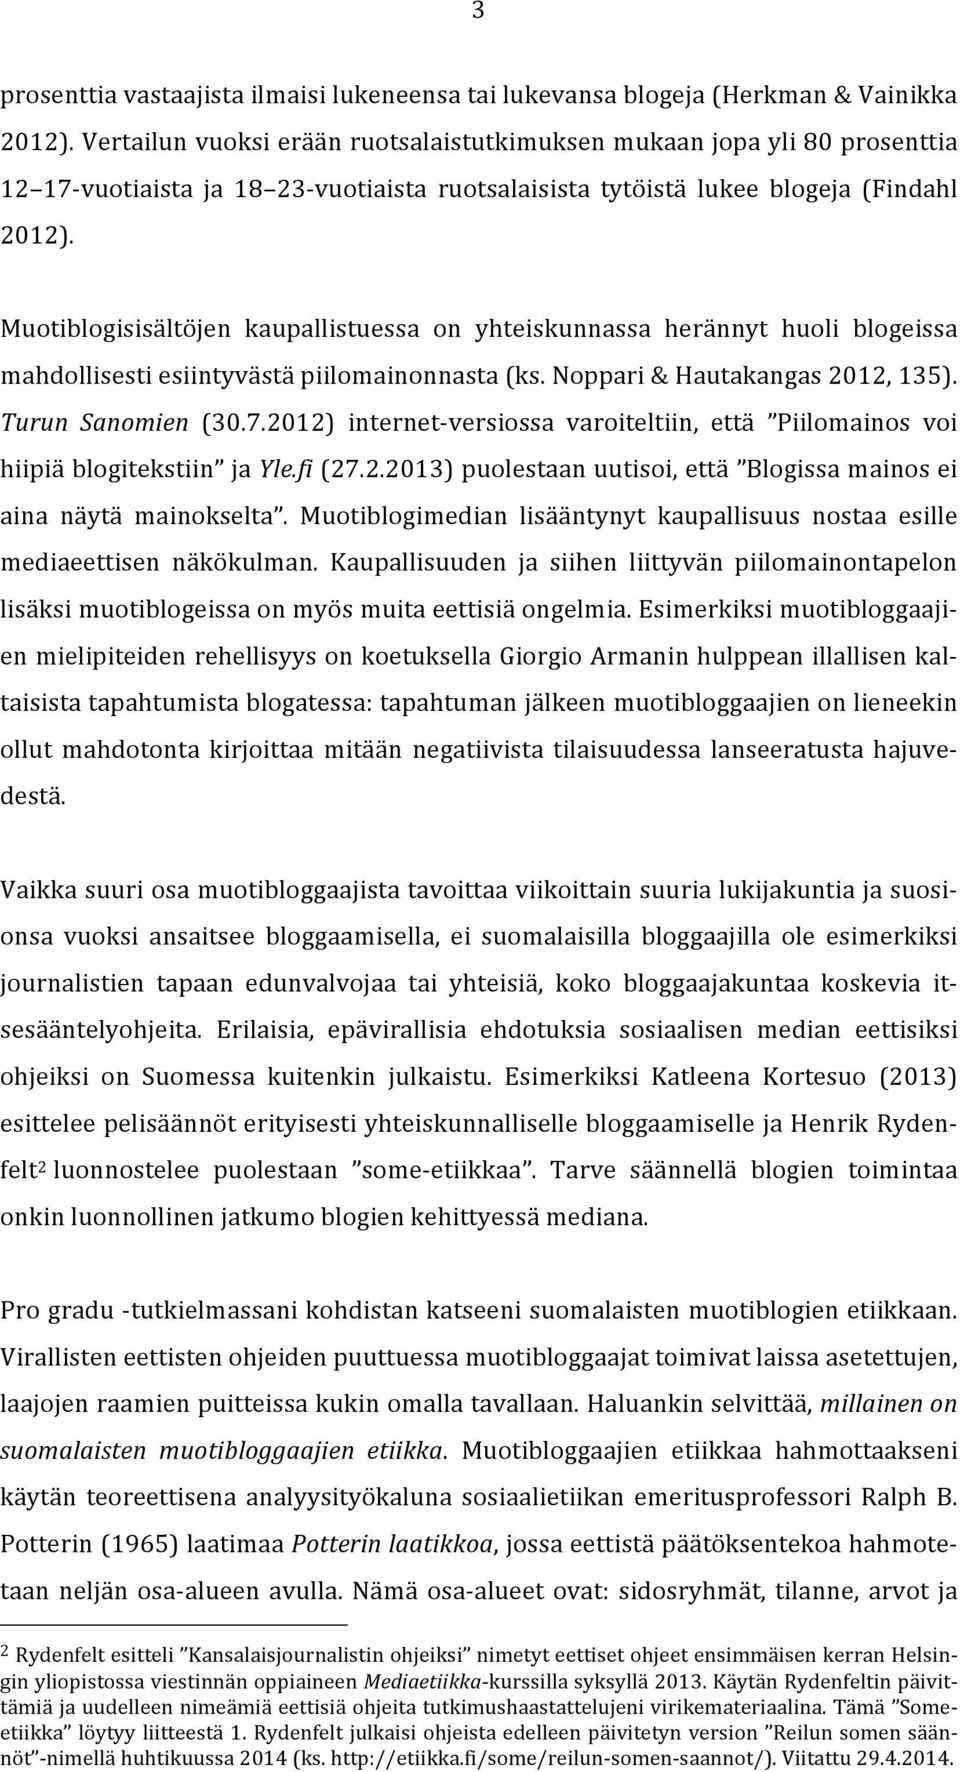 Muotiblogisisältöjen kaupallistuessa on yhteiskunnassa herännyt huoli blogeissa mahdollisesti esiintyvästä piilomainonnasta (ks. Noppari & Hautakangas 2012, 135). Turun Sanomien (30.7.